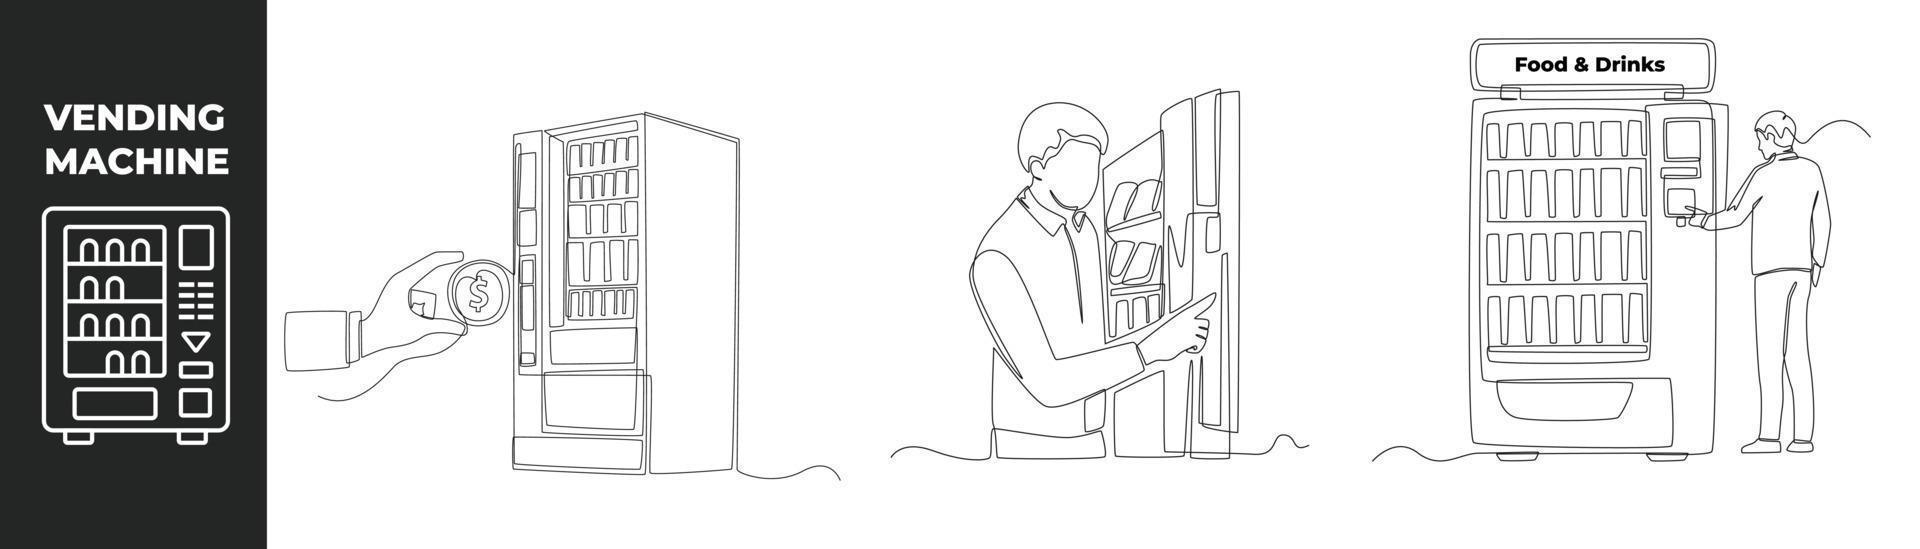 concept de jeu de distributeur automatique de dessin en ligne continu. un homme d'affaires utilise un distributeur automatique pour acheter de la nourriture et des boissons. distributeurs automatiques. illustration graphique vectorielle de dessin à une seule ligne. vecteur